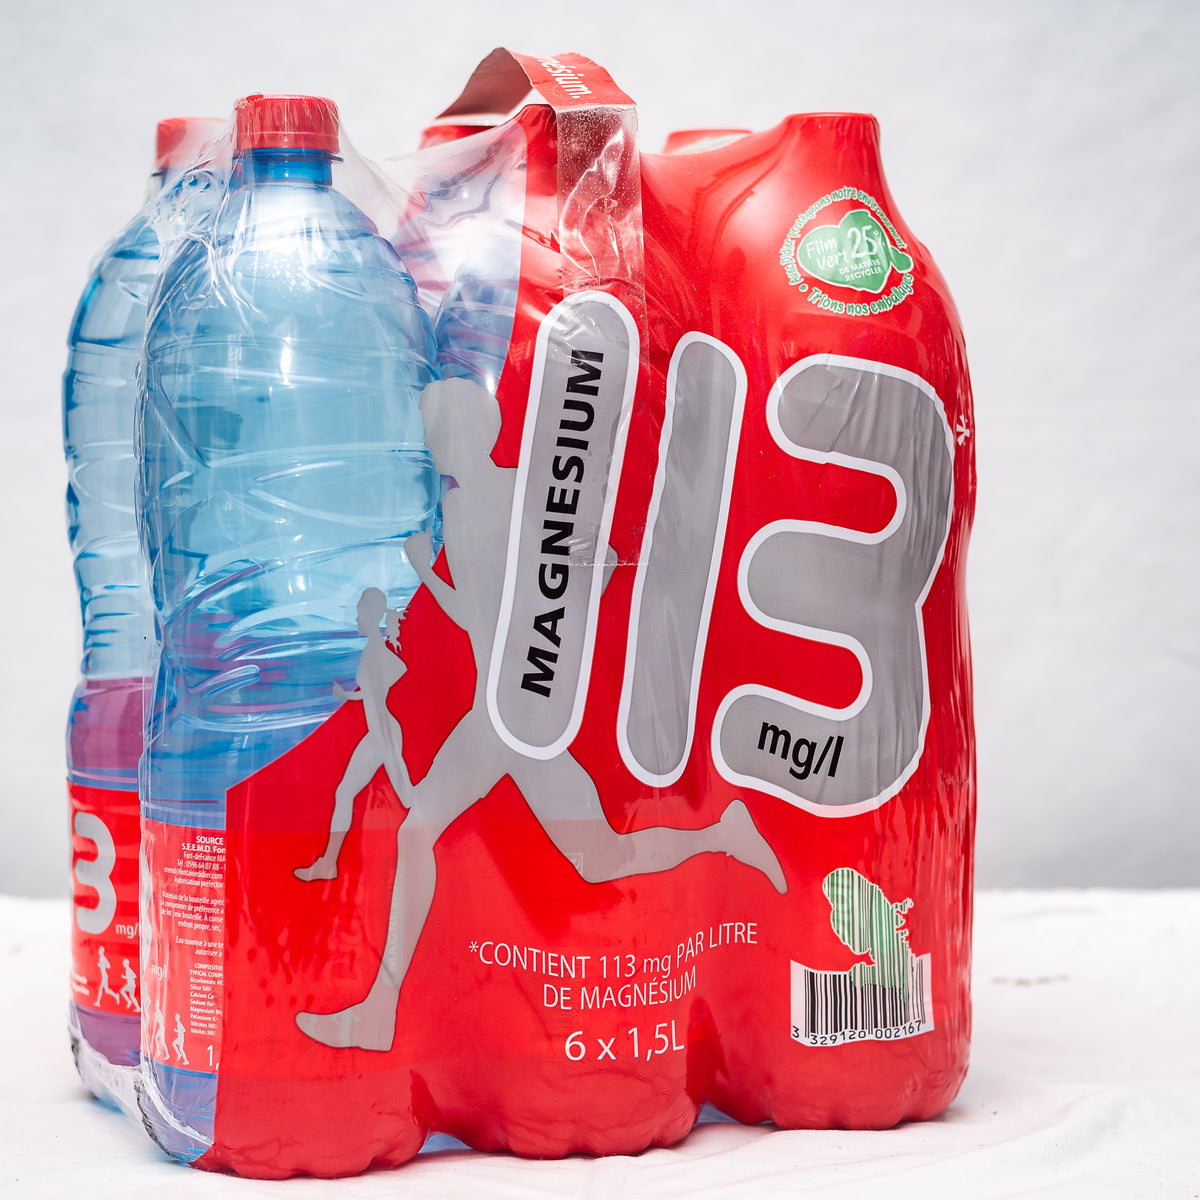 Bidon d'eau de source CHANFLOR : 5L – WestinDrink - Livraison de boissons  en Martinique